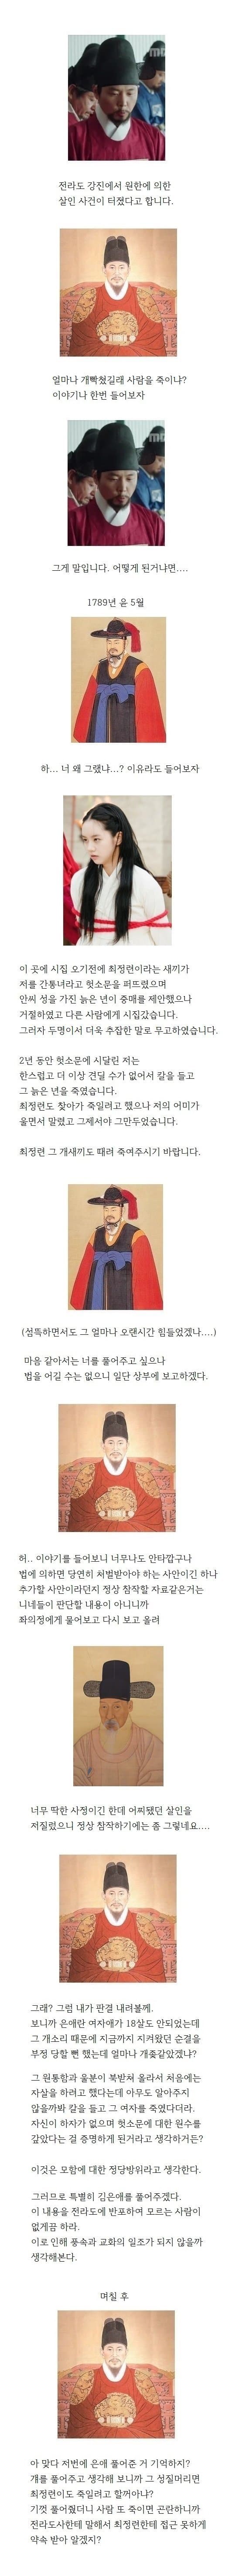 12 조선시대 원한에 의한 살인 판결.jpg